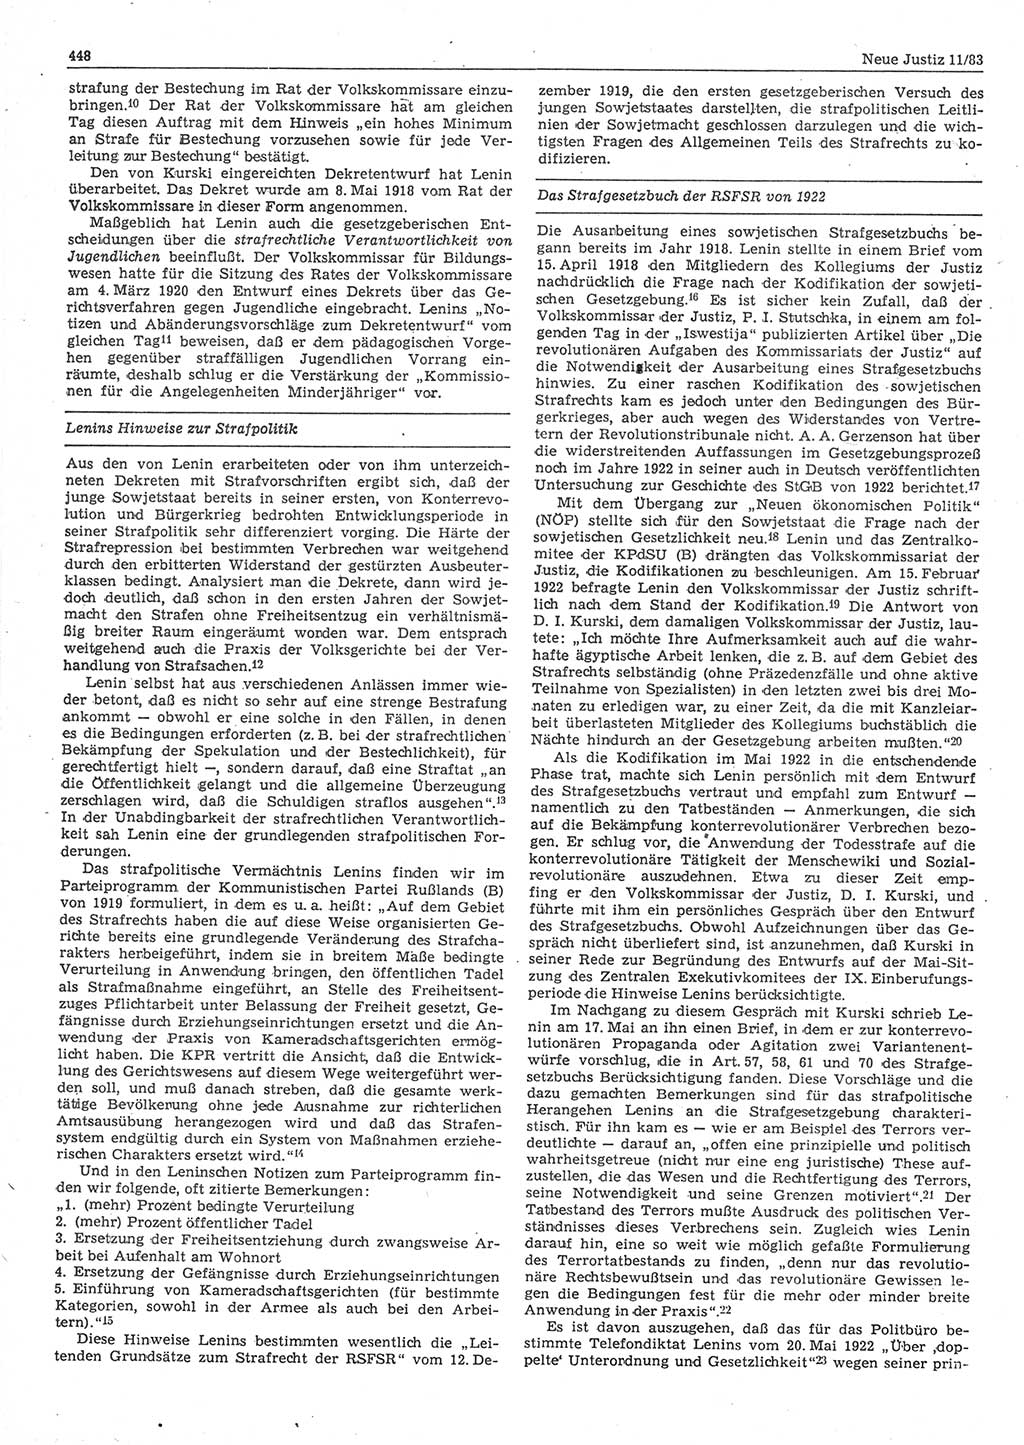 Neue Justiz (NJ), Zeitschrift für sozialistisches Recht und Gesetzlichkeit [Deutsche Demokratische Republik (DDR)], 37. Jahrgang 1983, Seite 448 (NJ DDR 1983, S. 448)